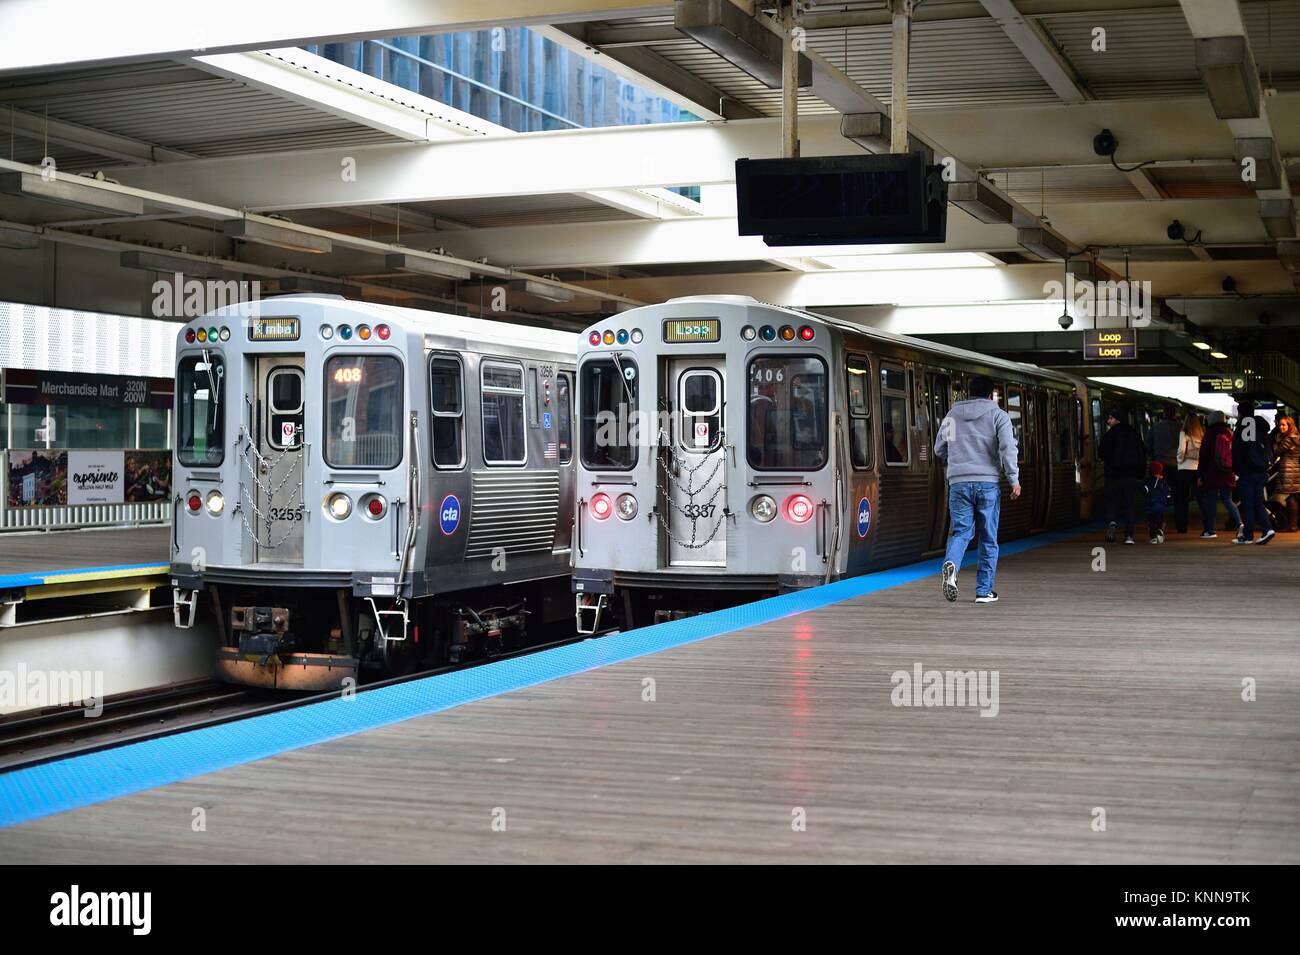 In entrata e in uscita CTA linea marrone treni rispondere al Merchandise Mart stazione proprio all'esterno del ciclo. Chicago, Illinois, Stati Uniti d'America. Foto Stock